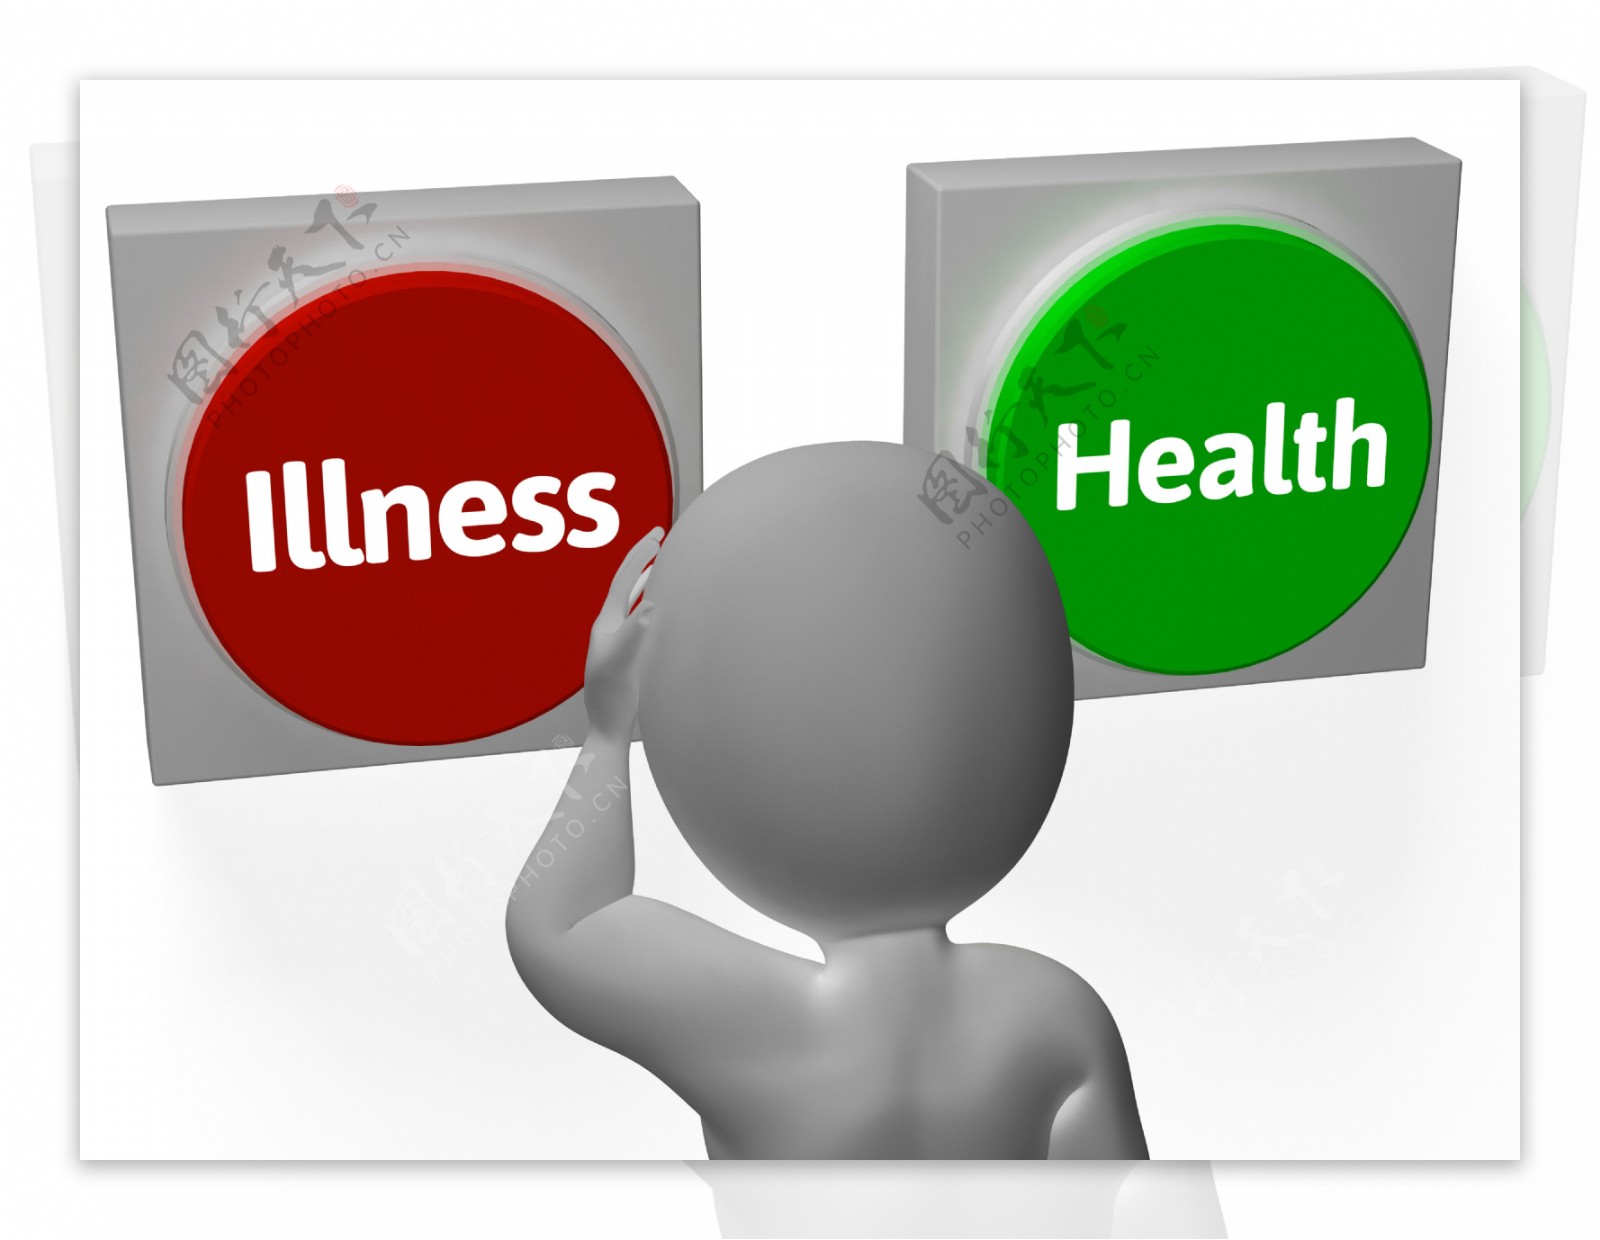 疾病健康按钮显示疾病或医疗